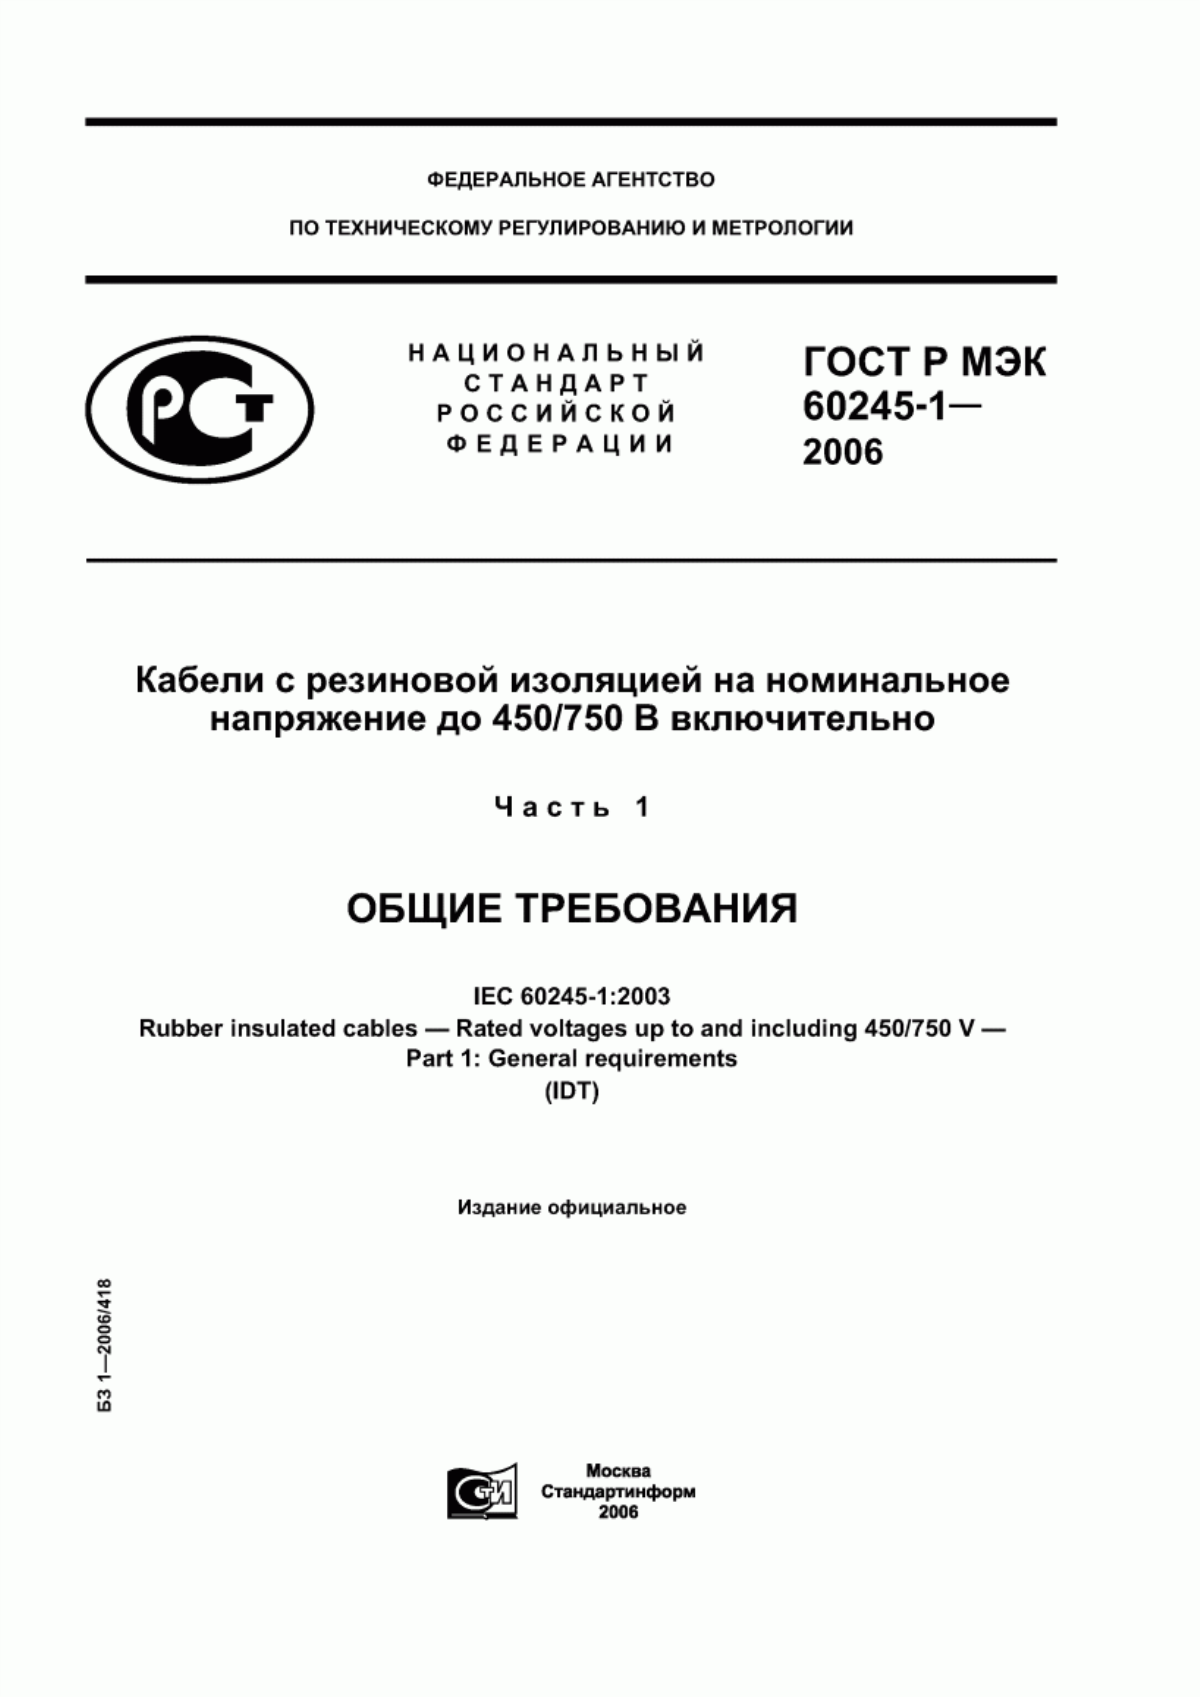 ГОСТ Р МЭК 60245-1-2006 Кабели с резиновой изоляцией на номинальное напряжение до 450/750 В включительно. Часть 1. Общие требования